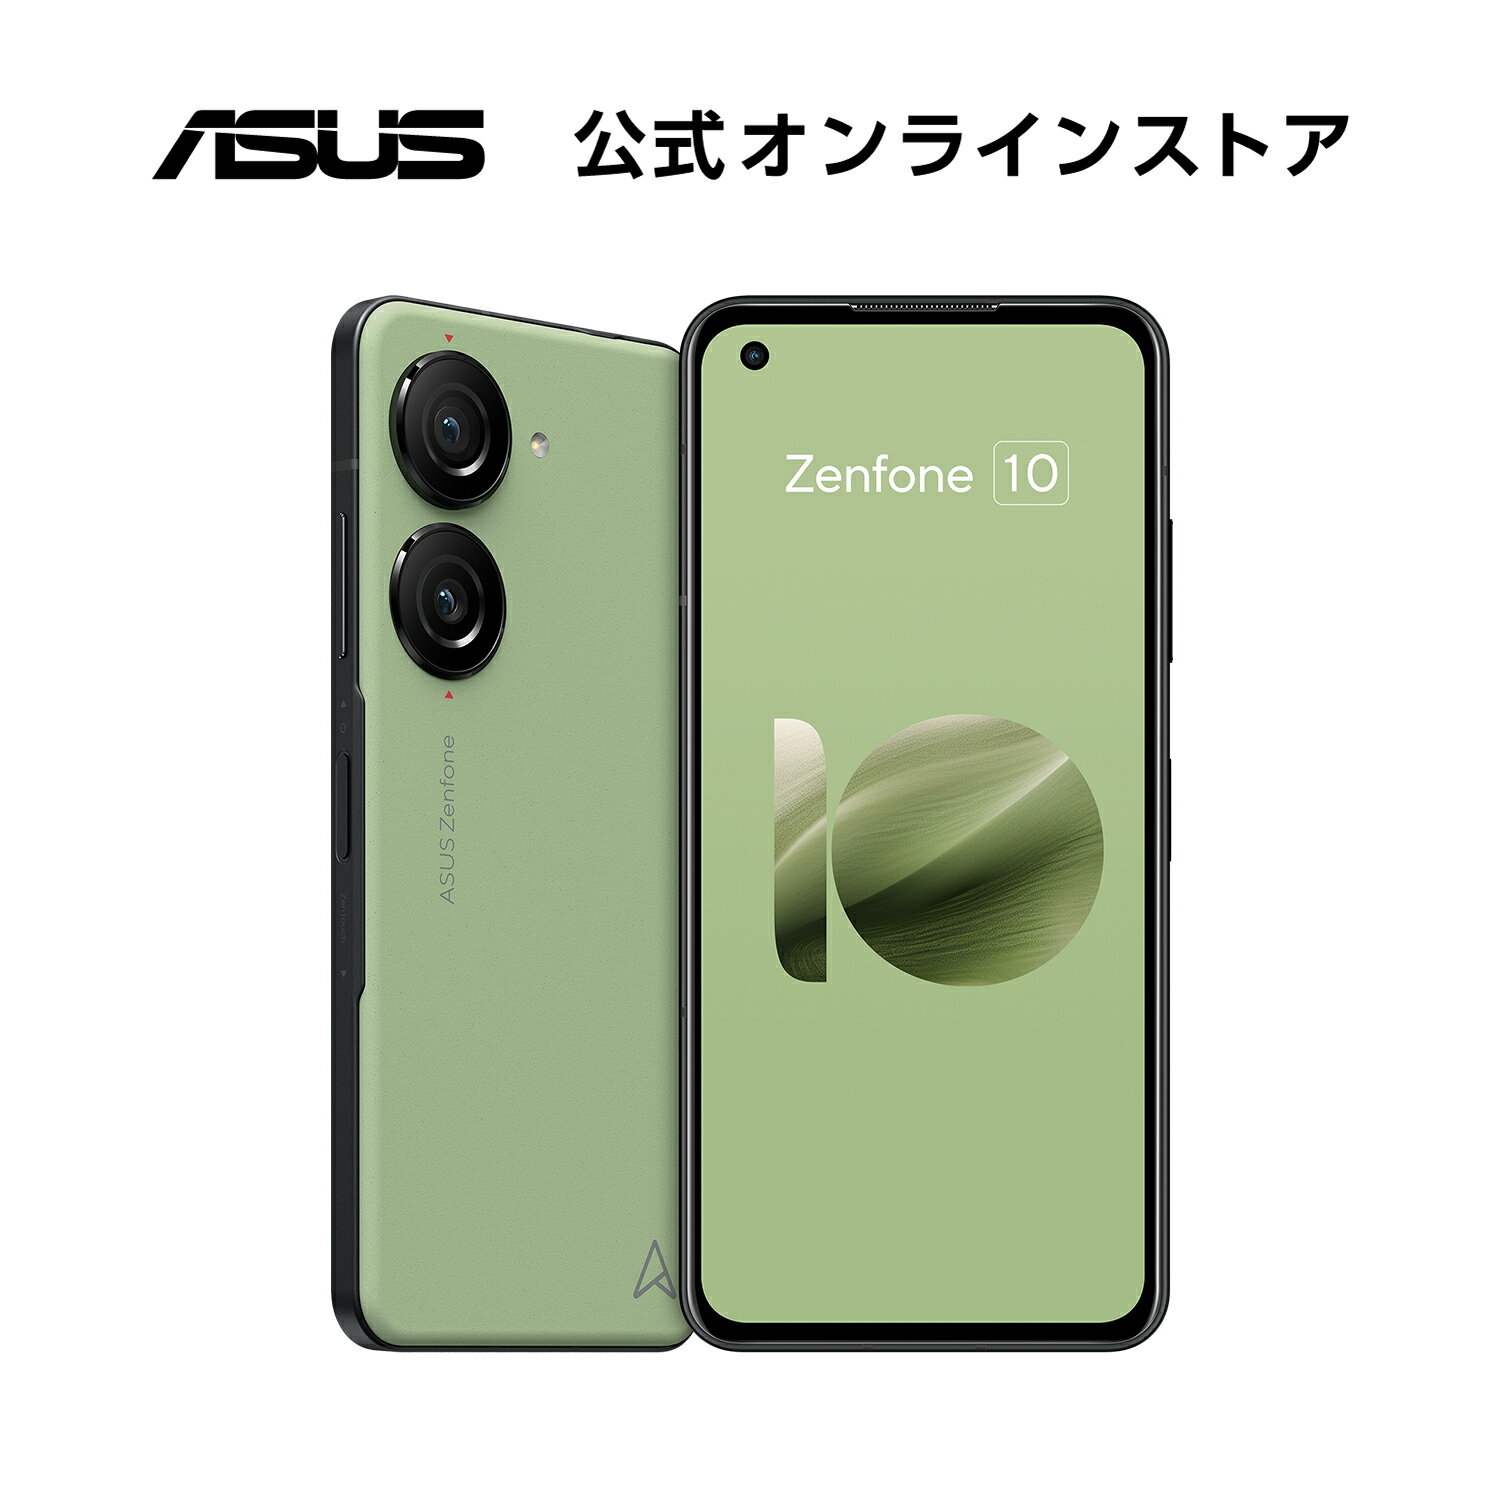 SIMフリースマートフォン ASUS Zenfone 10 メモリ 8GB ストレージ 256GB 5.9型 ワイド AMOLED Qualcomm Snapdragon 8 Gen 2 防水防塵 IP65 IP68 Android 13 5G FeliCa おサイフケータイ 新品 おしゃれ オーロラグリーン ZF10-GR8S256